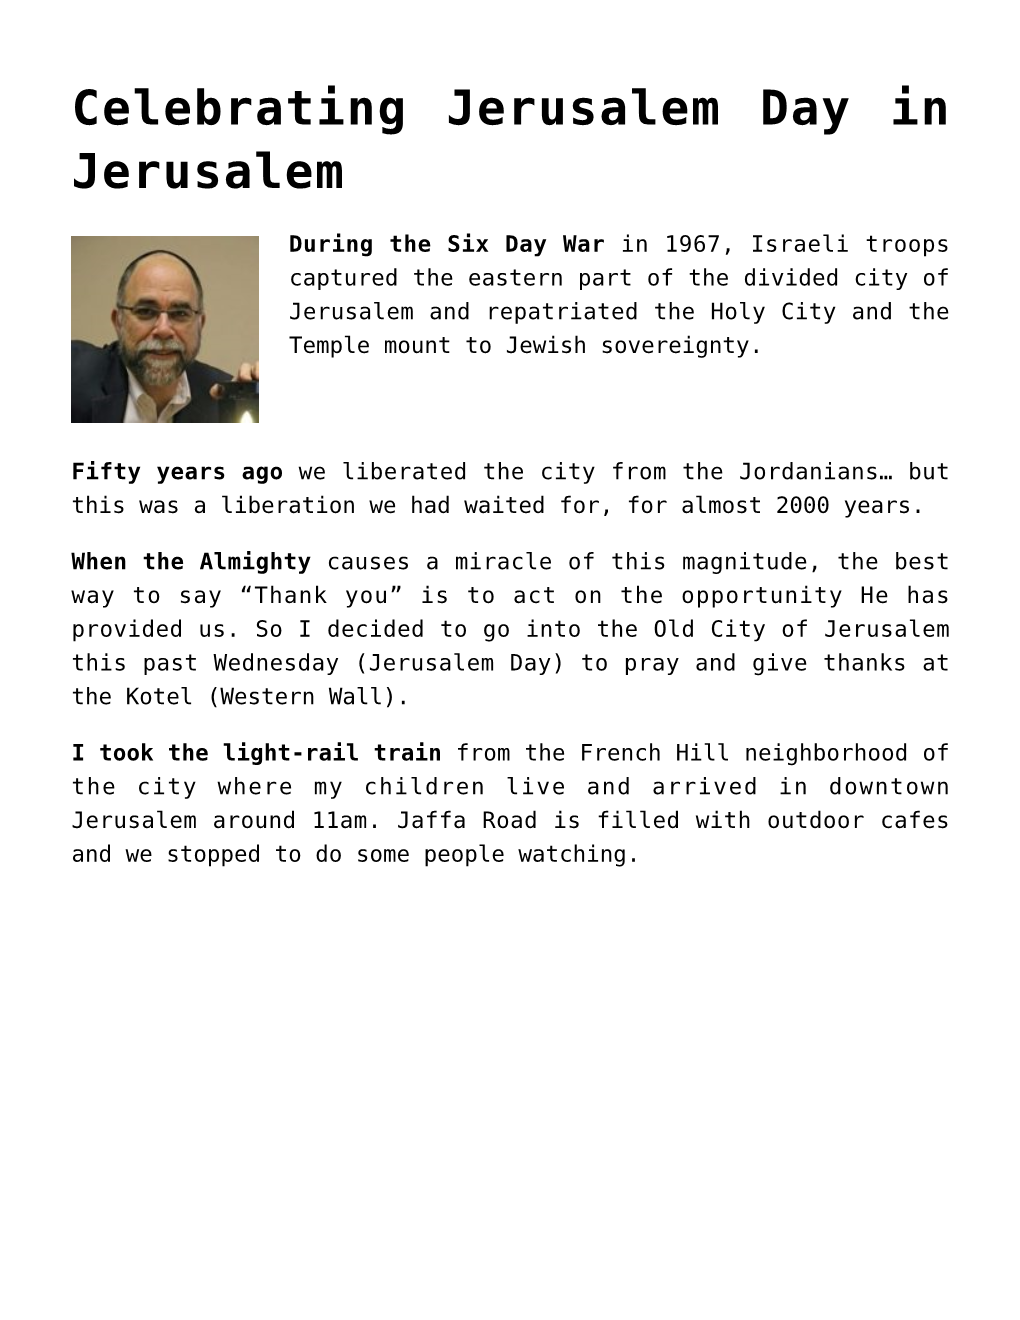 Celebrating Jerusalem Day in Jerusalem